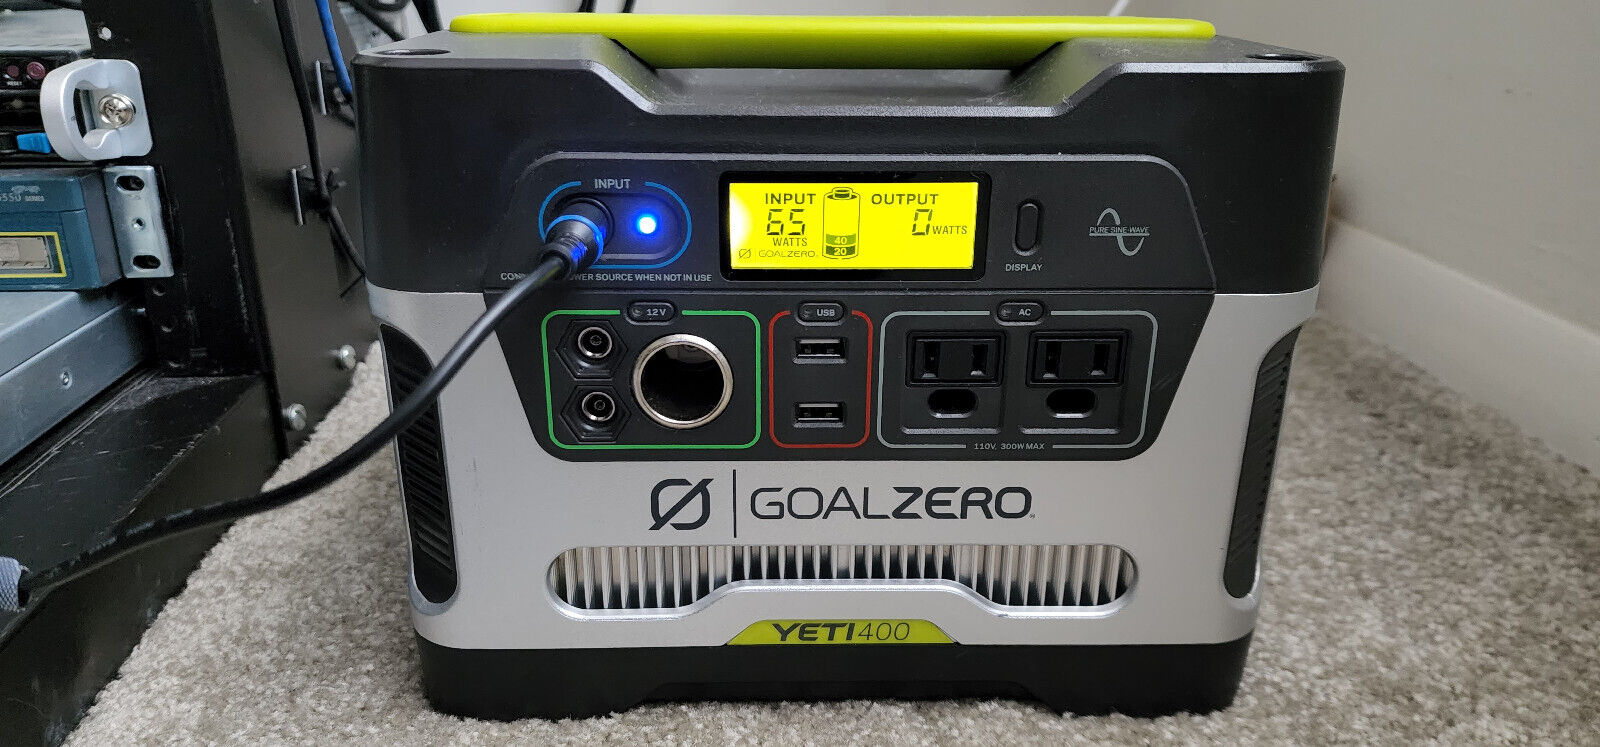 Goal Zero Yeti 400 - Portable Power Station